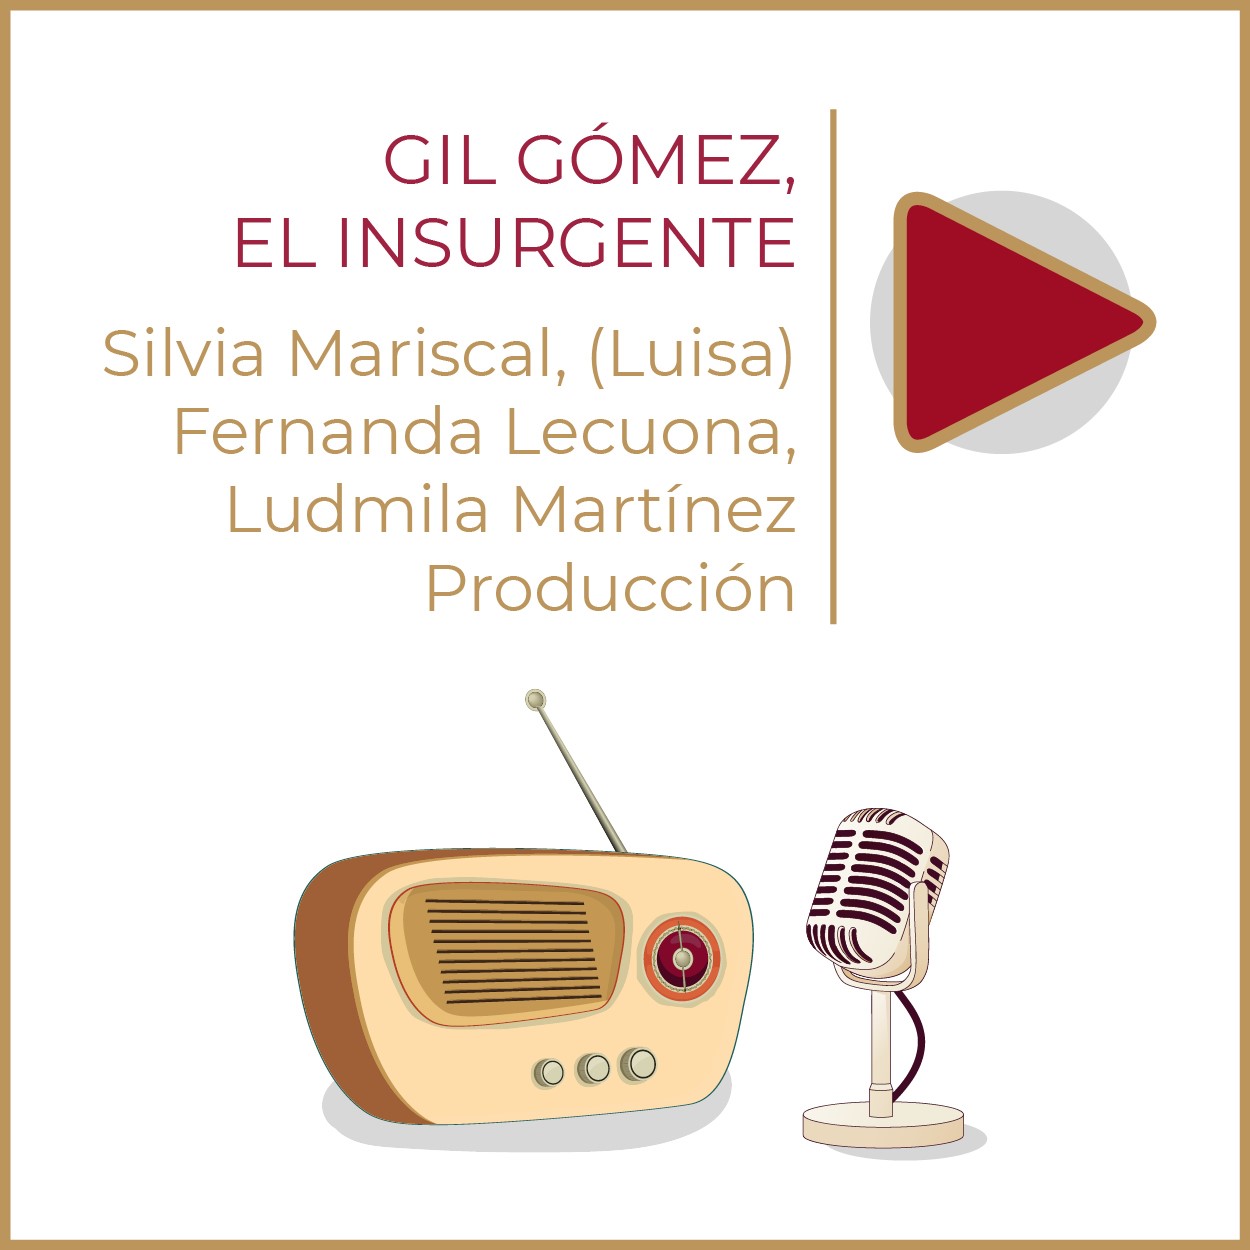 Gil Gómez, el Insurgente Productor:  Silvia Mariscal, (Luisa) Fernanda Lecuona, Ludmila Martínez